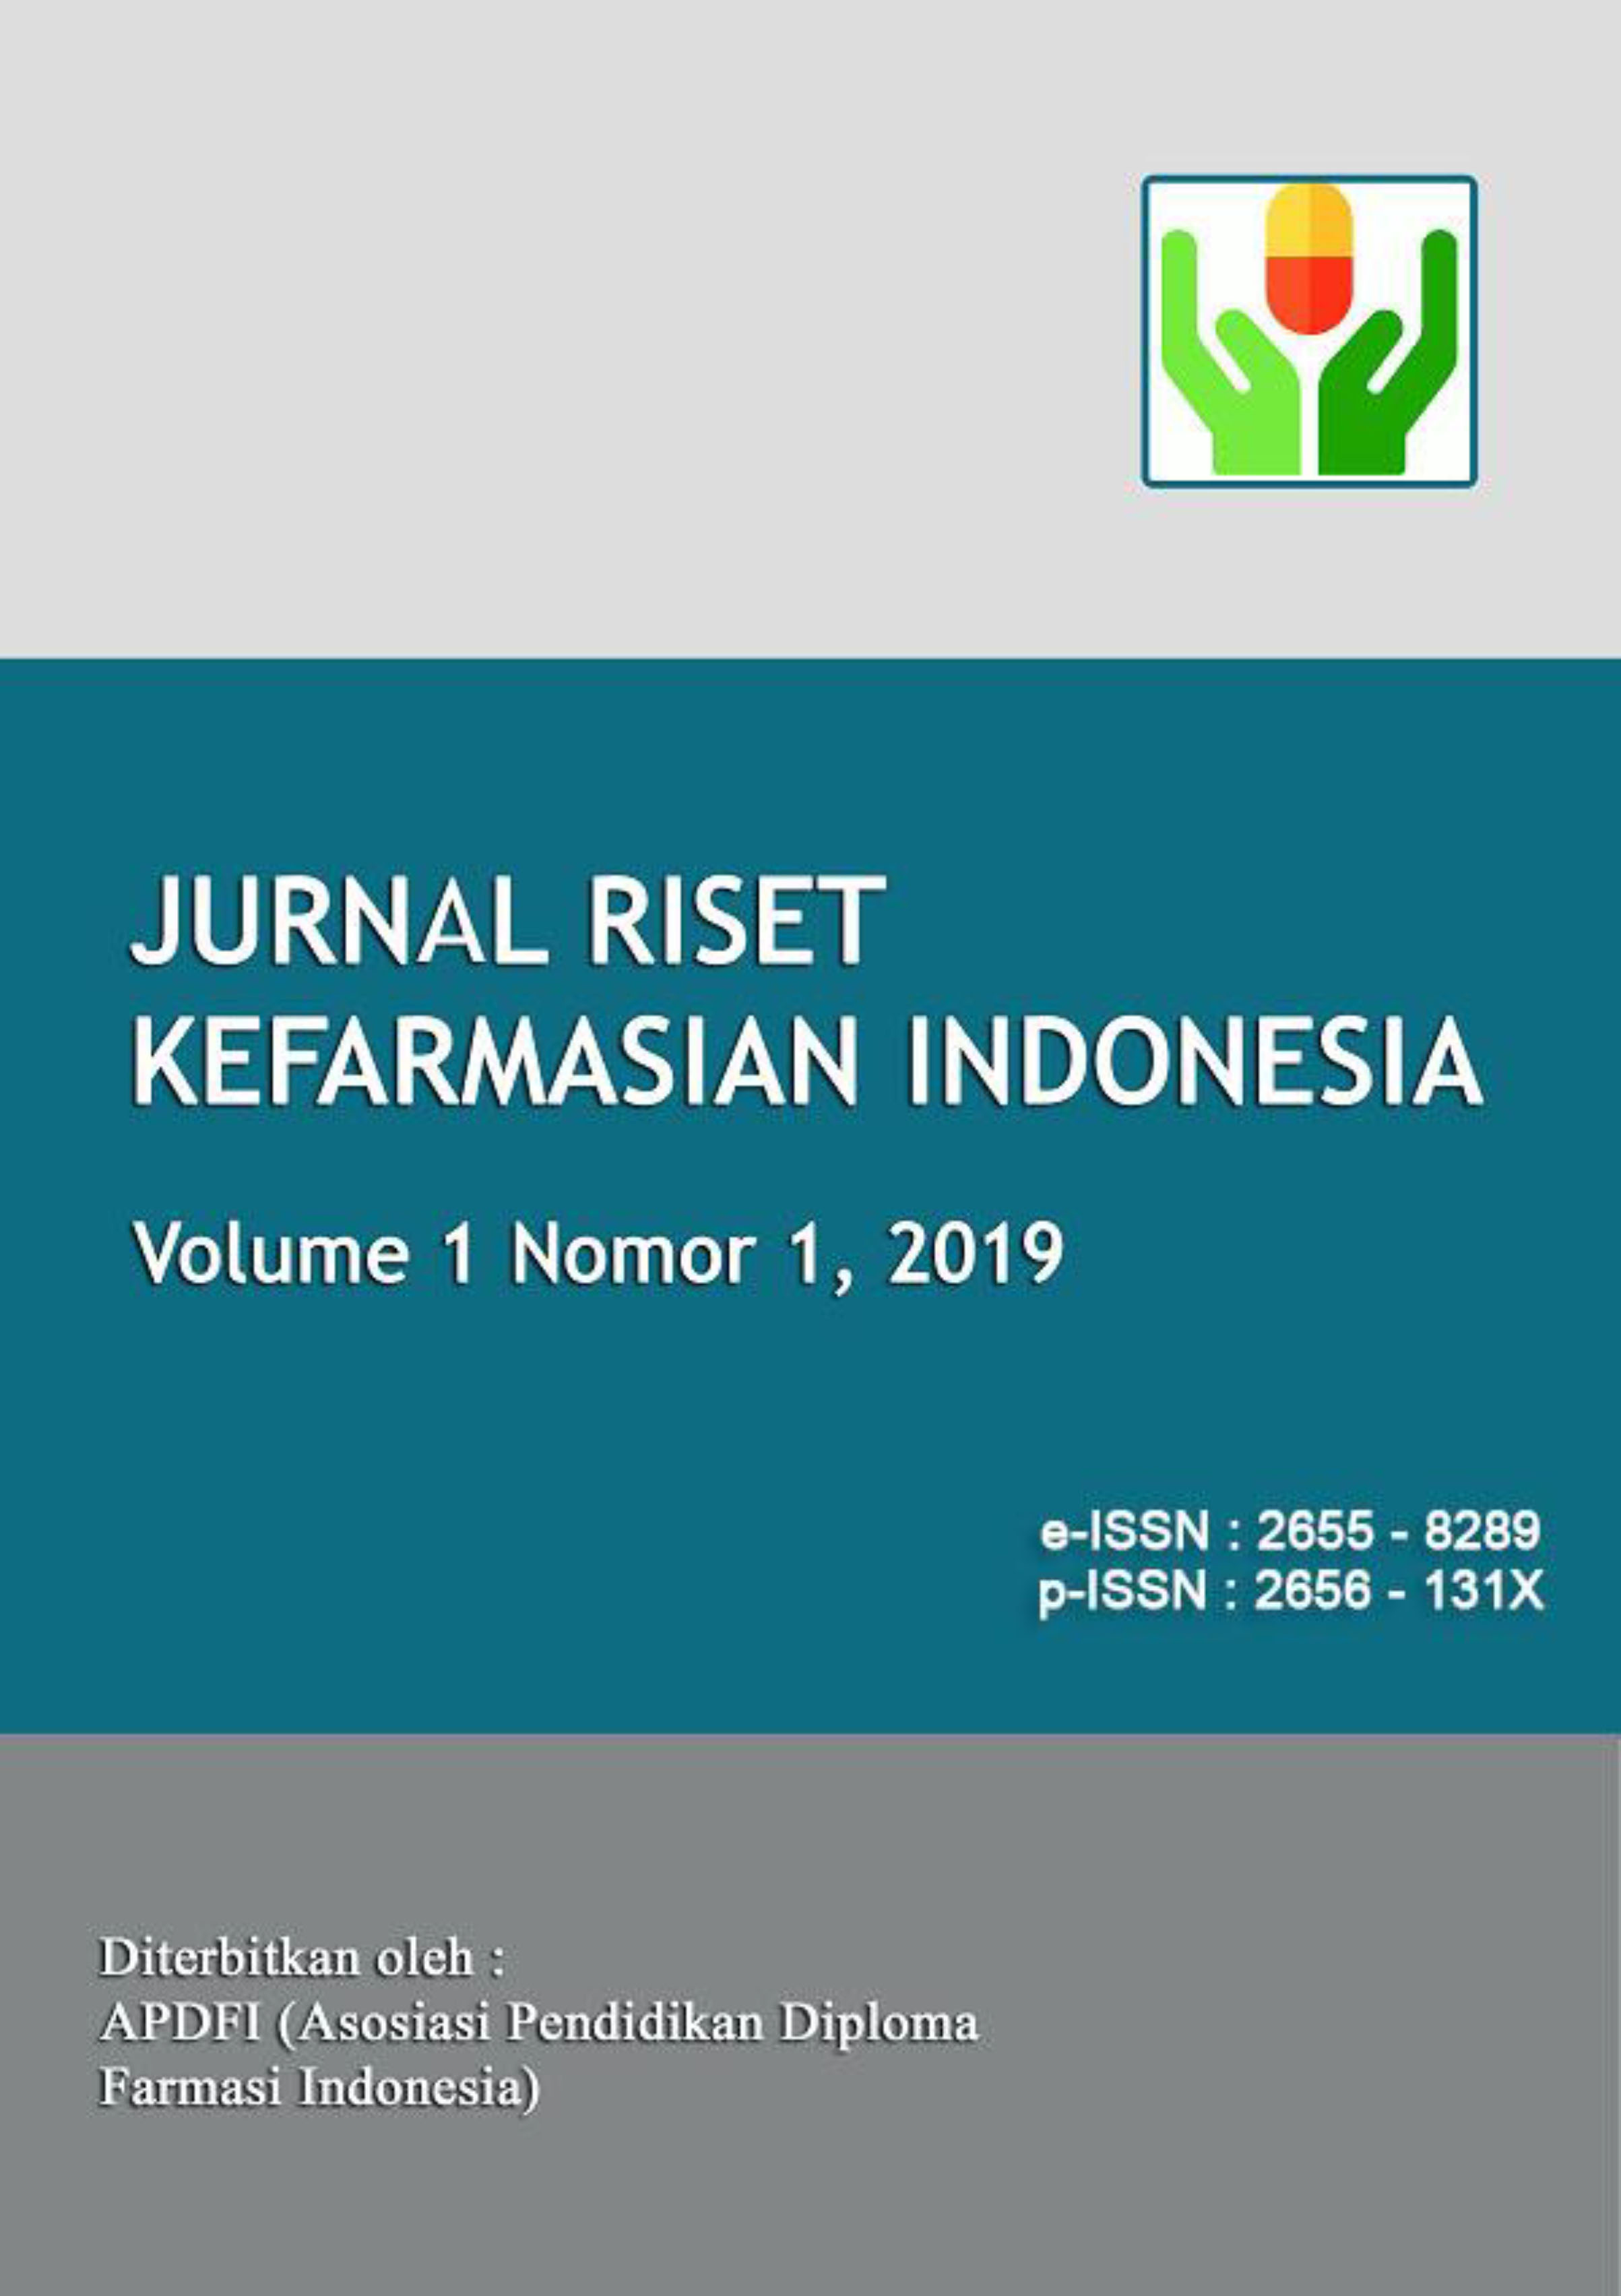 Jurnal Riset Kefarmasian Indonesia Vol. 1 Nomor 1 2019